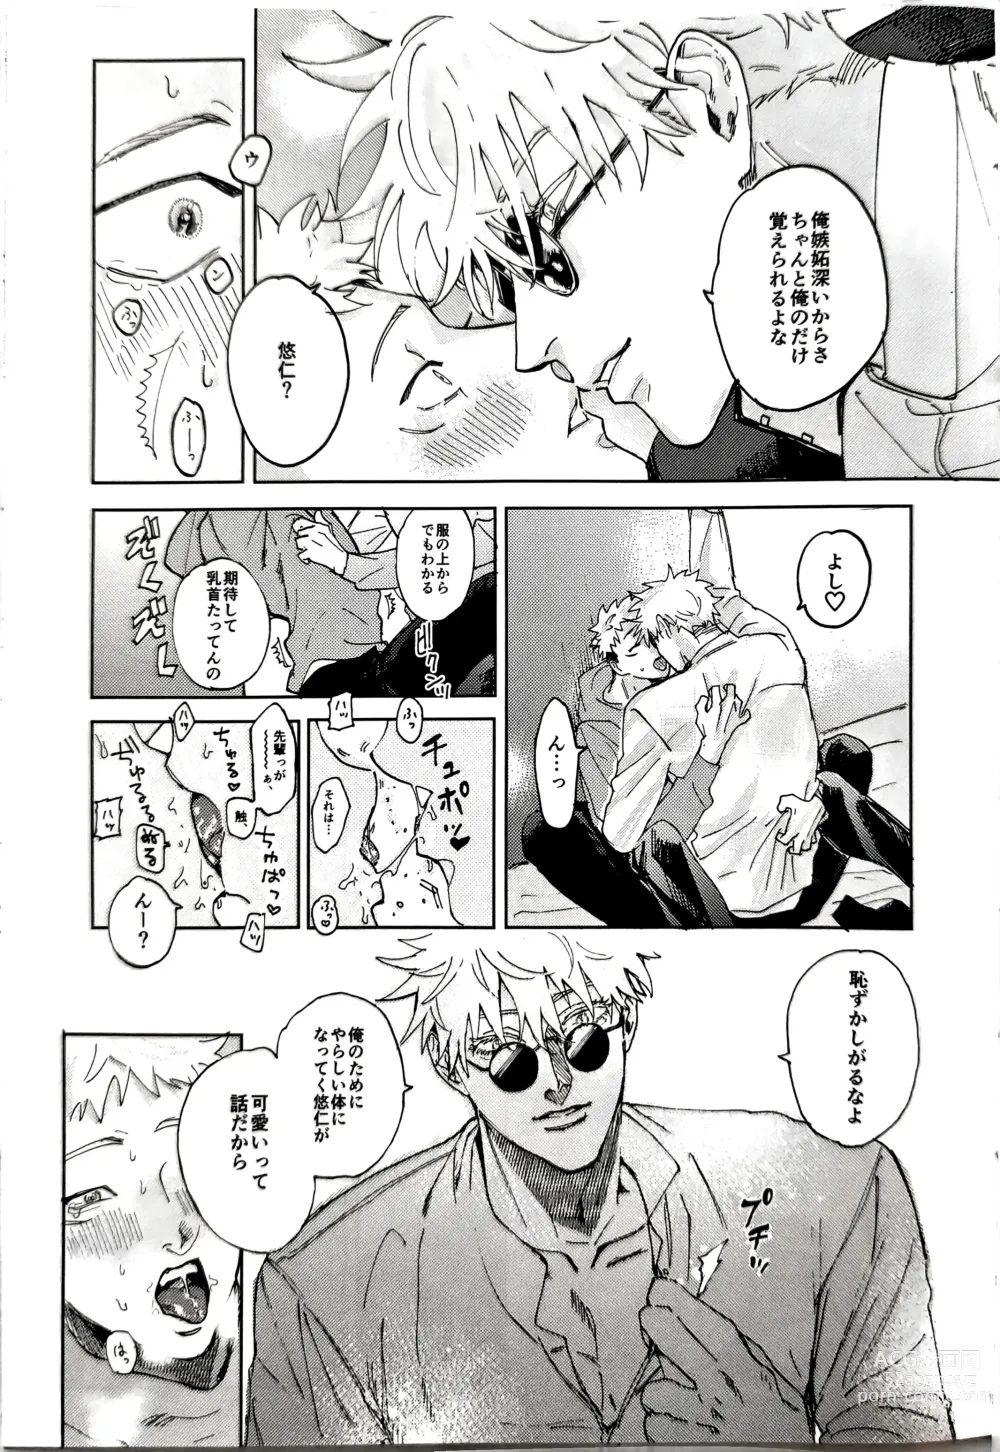 Page 14 of doujinshi Sore ga Aitte Yatsu desho - the prostate orgasm